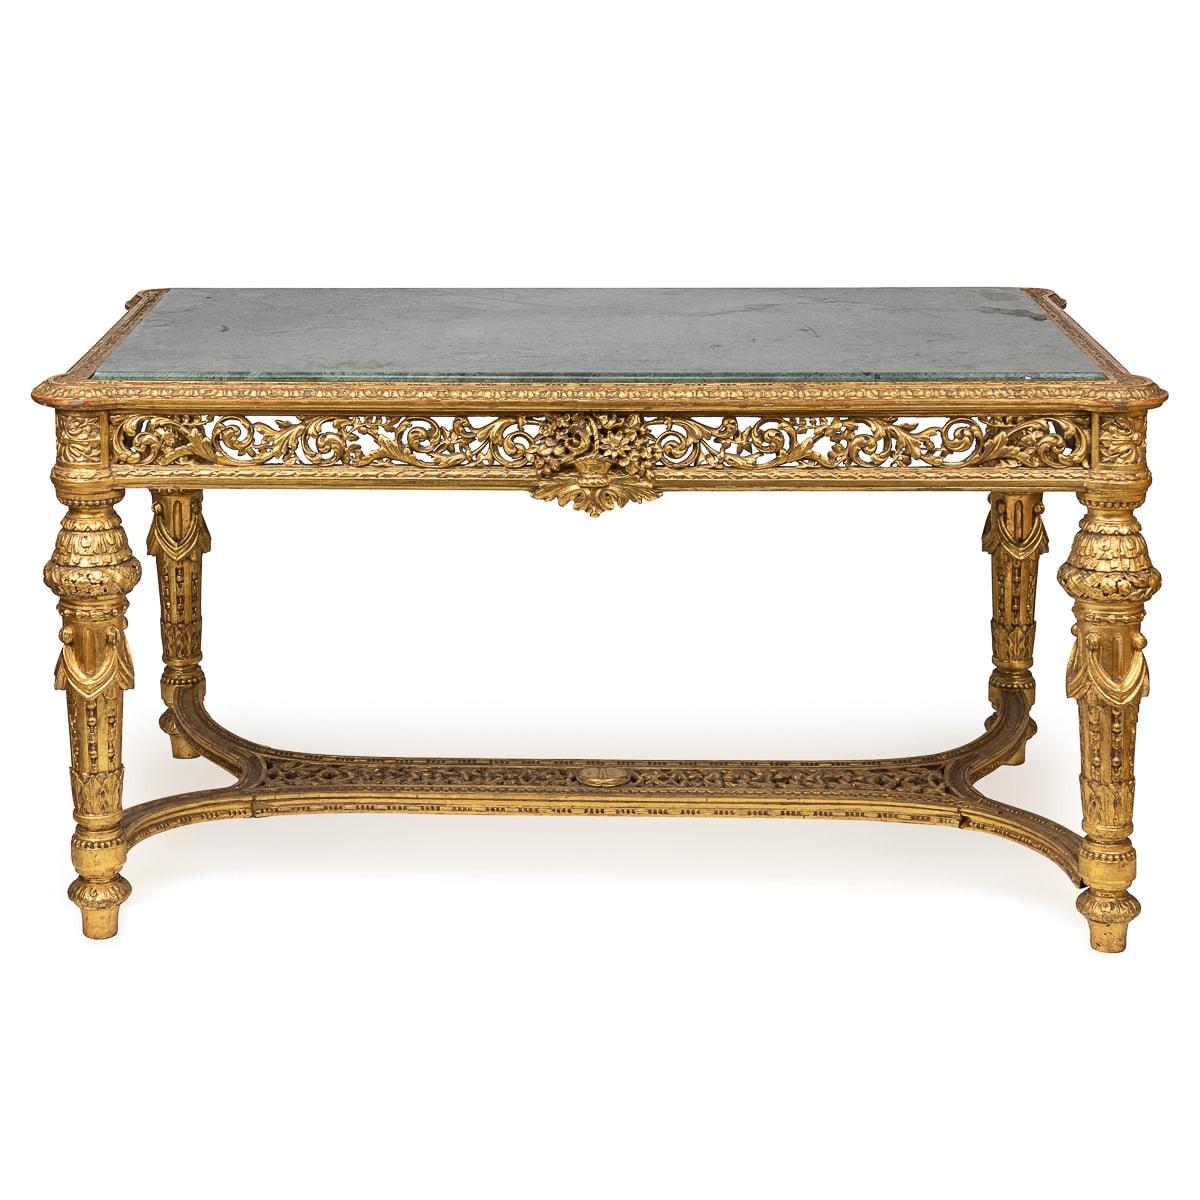 Antiker französischer Louis XVI-Salontisch aus Goldholz des späten 19. Jahrhunderts, eine geschmackvolle Verbindung von Goldholz und grünem Alp-Marmor. Der Tisch ist mit kunstvoll geschnitzten Blattwerkmotiven an den Seiten, den Beinen und der